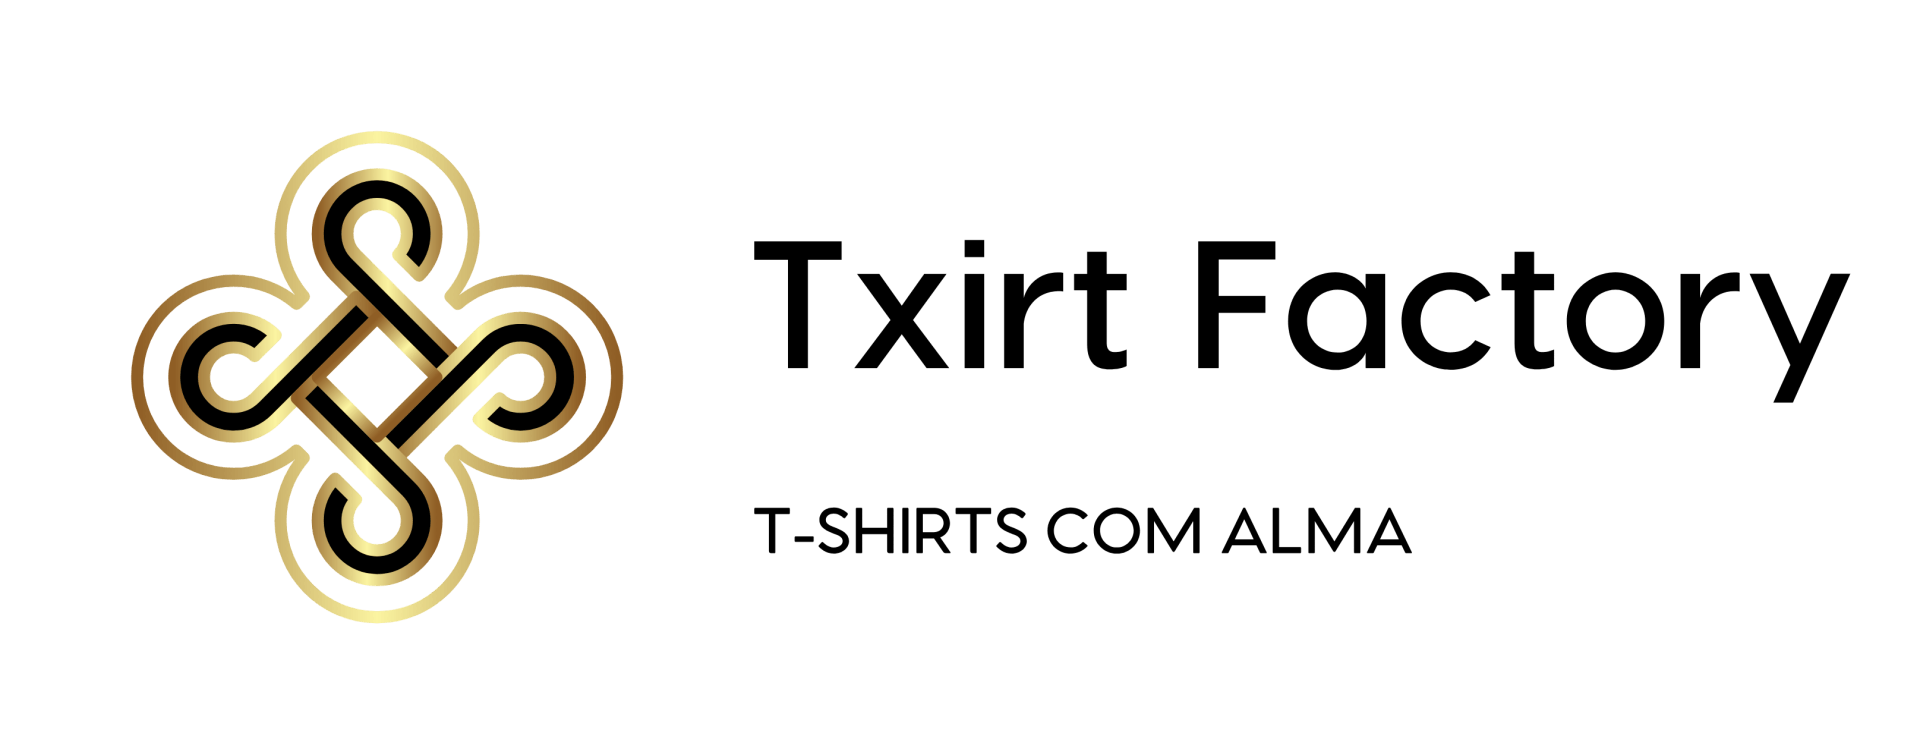 Txirt Factory - Tshirts com Alma